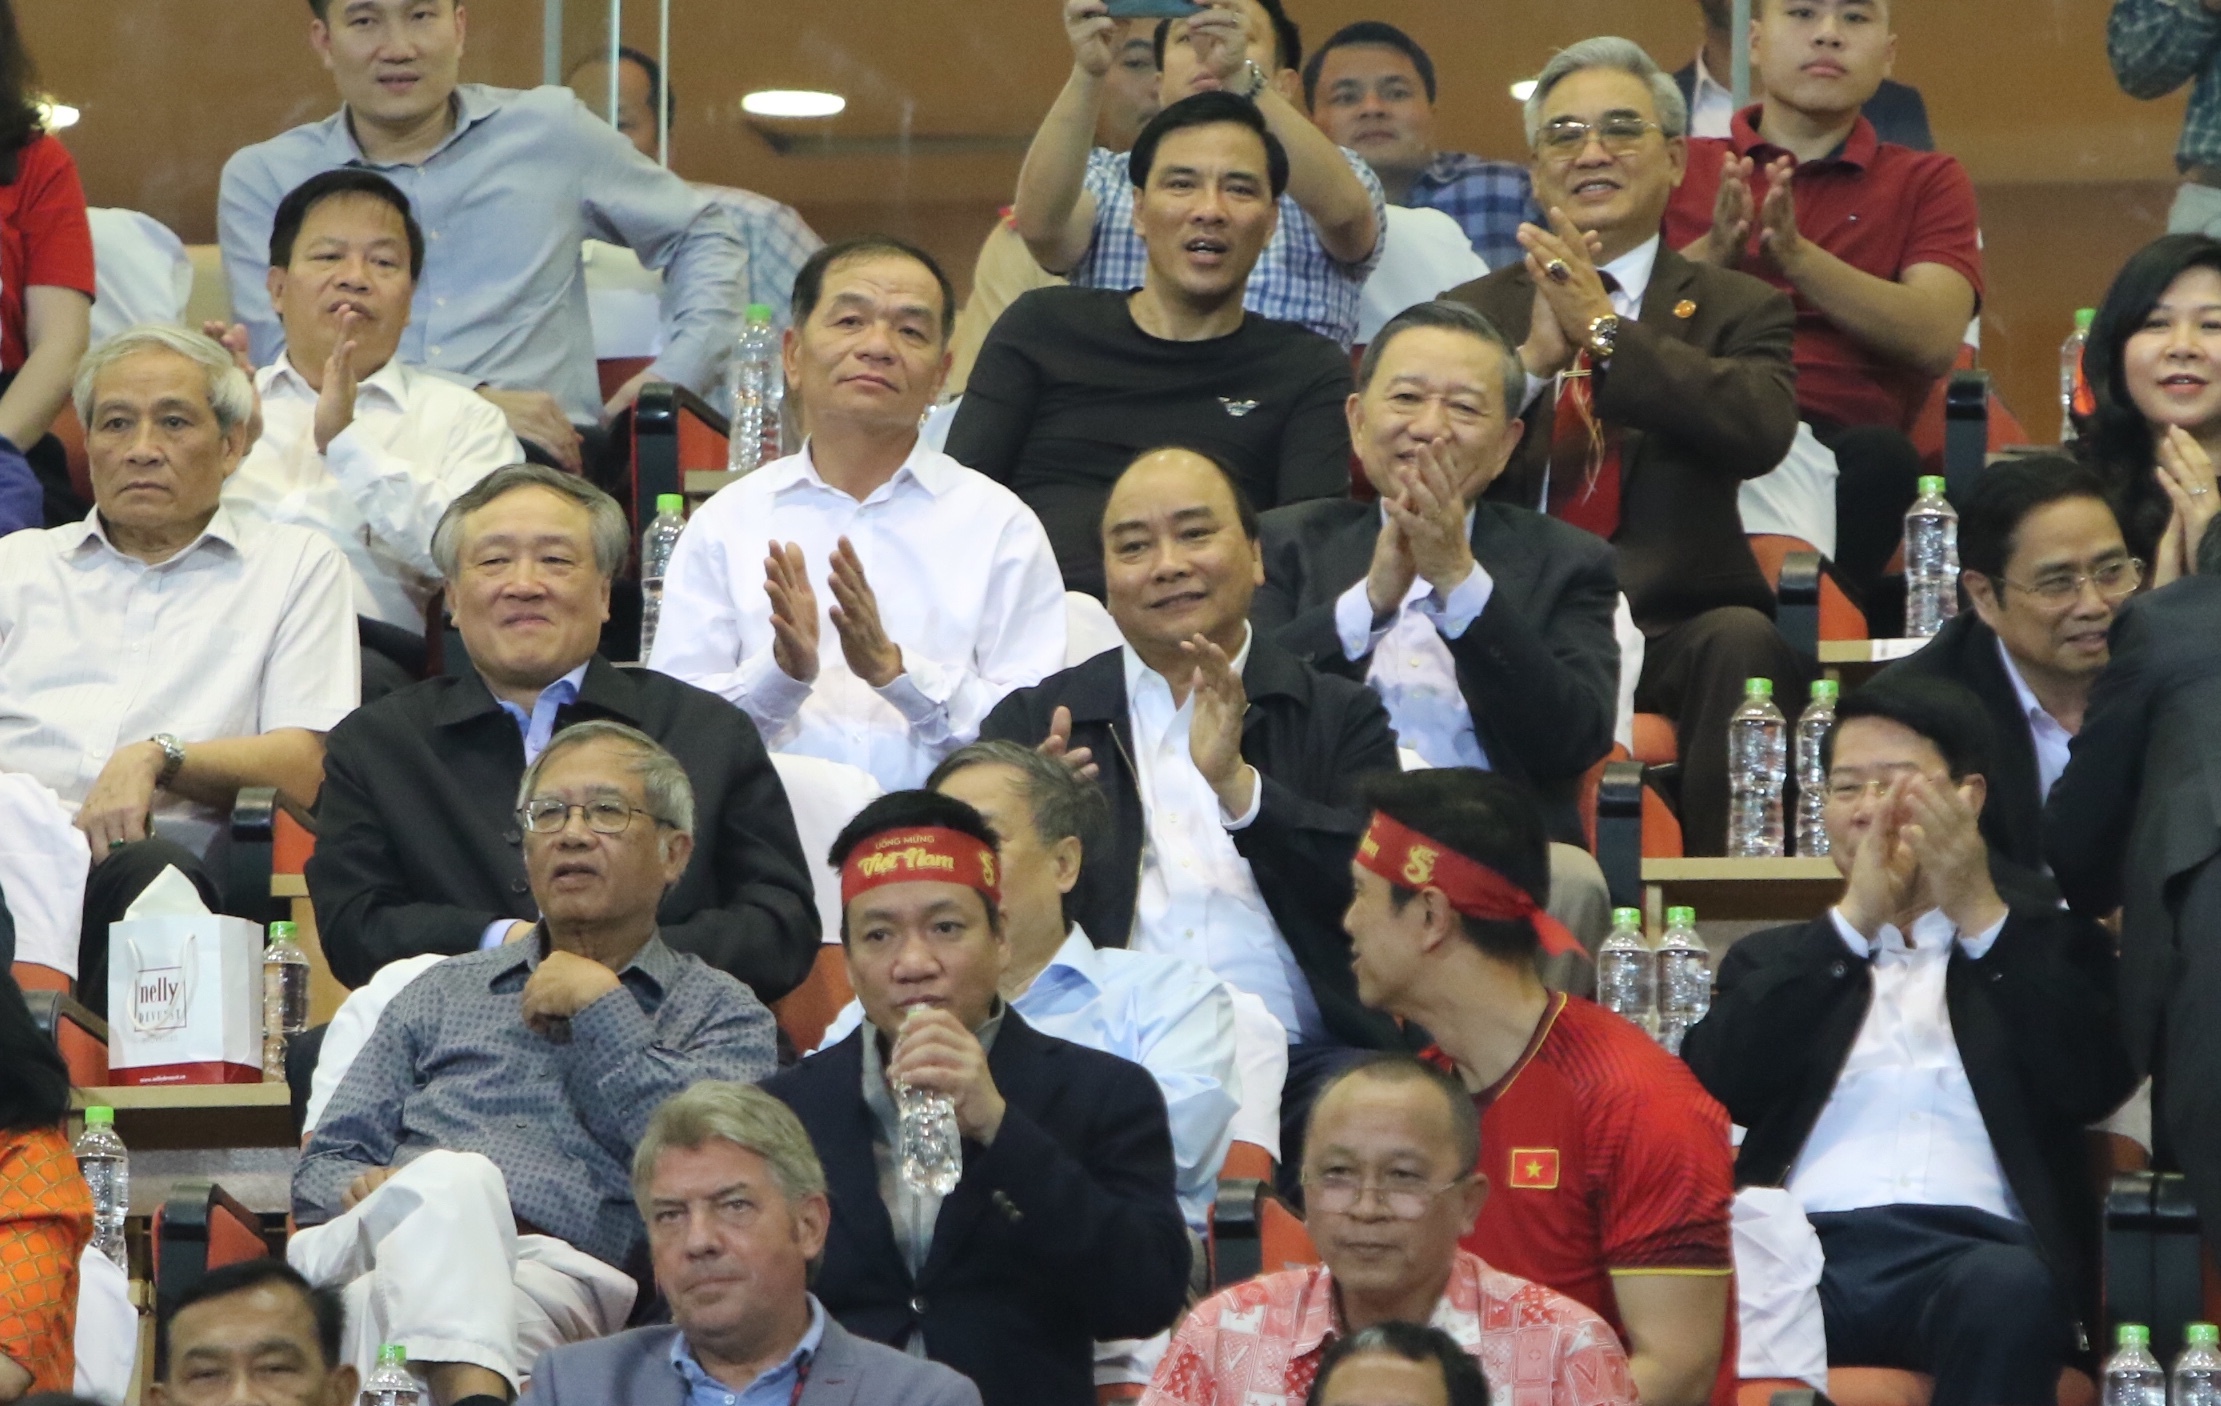 Thủ tướng Nguyễn Xuân Phúc cùng nhiều đồng chí lãnh đạo Đảng, Nhà nước tới sân vận động Mỹ Đình chứng kiến trận bán kết AFF Cup giữa đội tuyển Việt Nam và đội tuyển Philippines, tối 6-12. - Ảnh: VGP